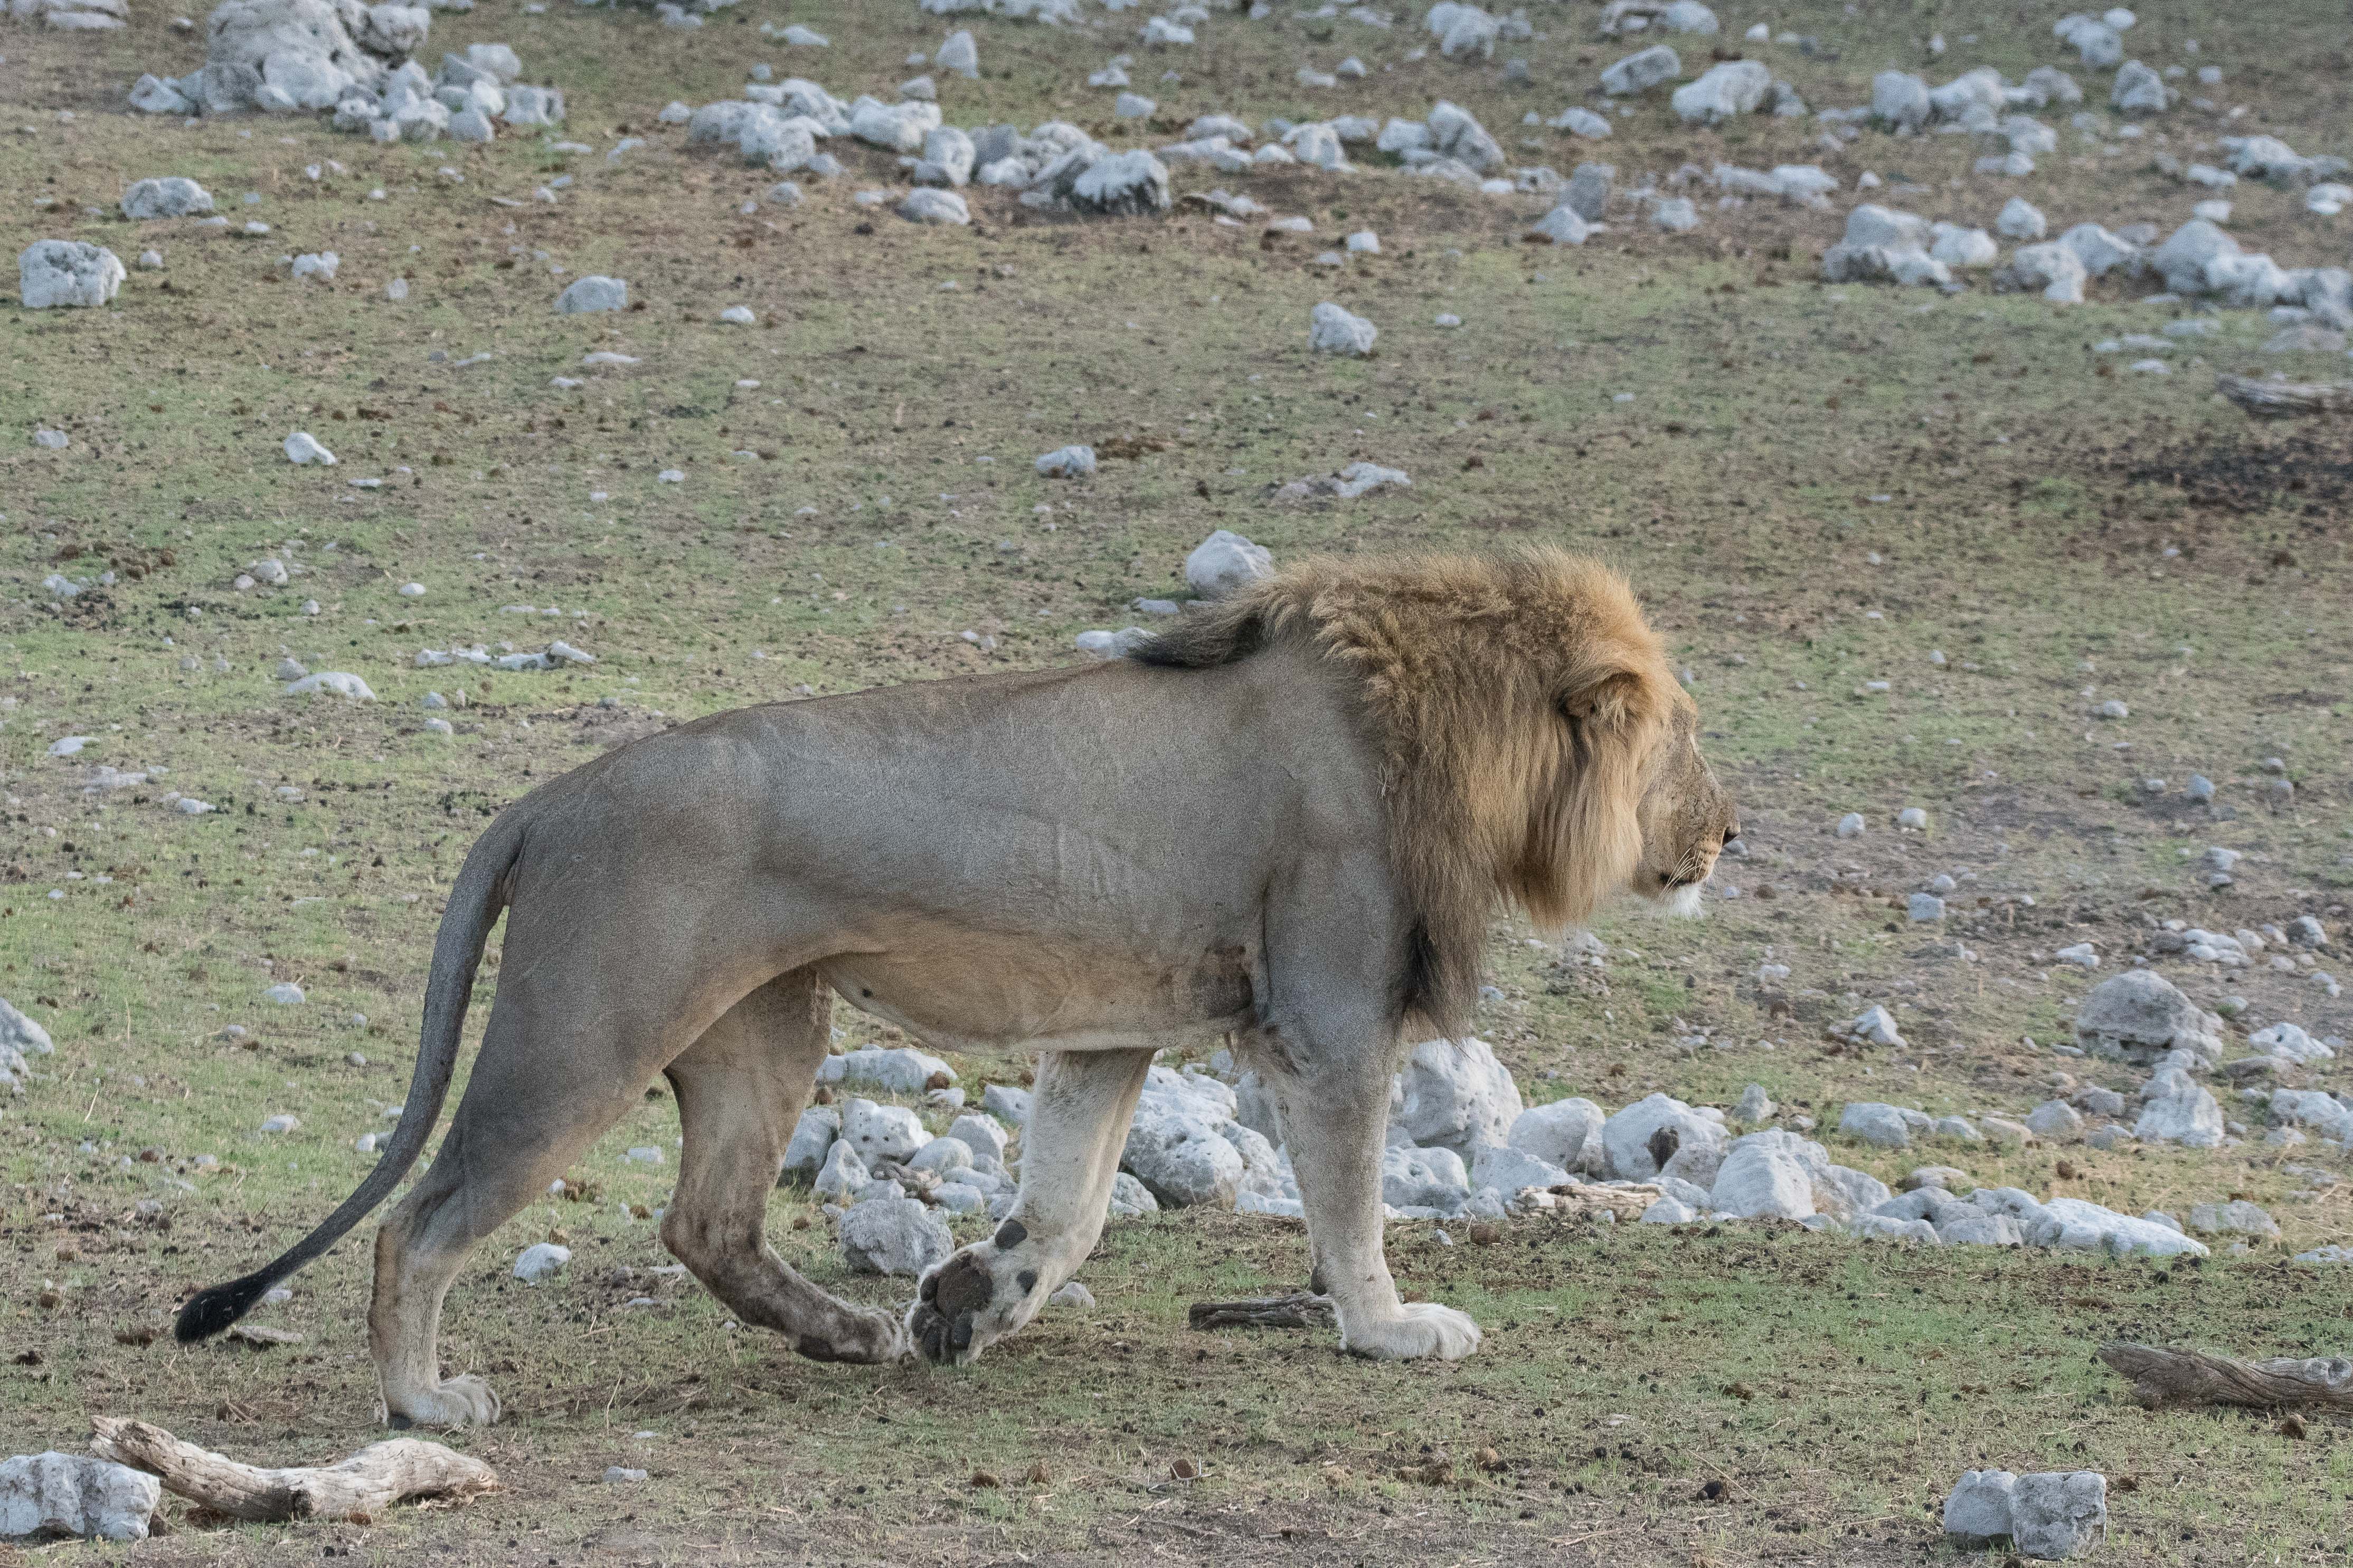 Ayant probablement constaté l'absence d'indice d'ovulation prochaine aussi chez la seconde lionne, le lion les quitte toutes deux, au moins provisoirement, pour vaquer à ses autres occupations, Namutoni, Etosha, Namibie.